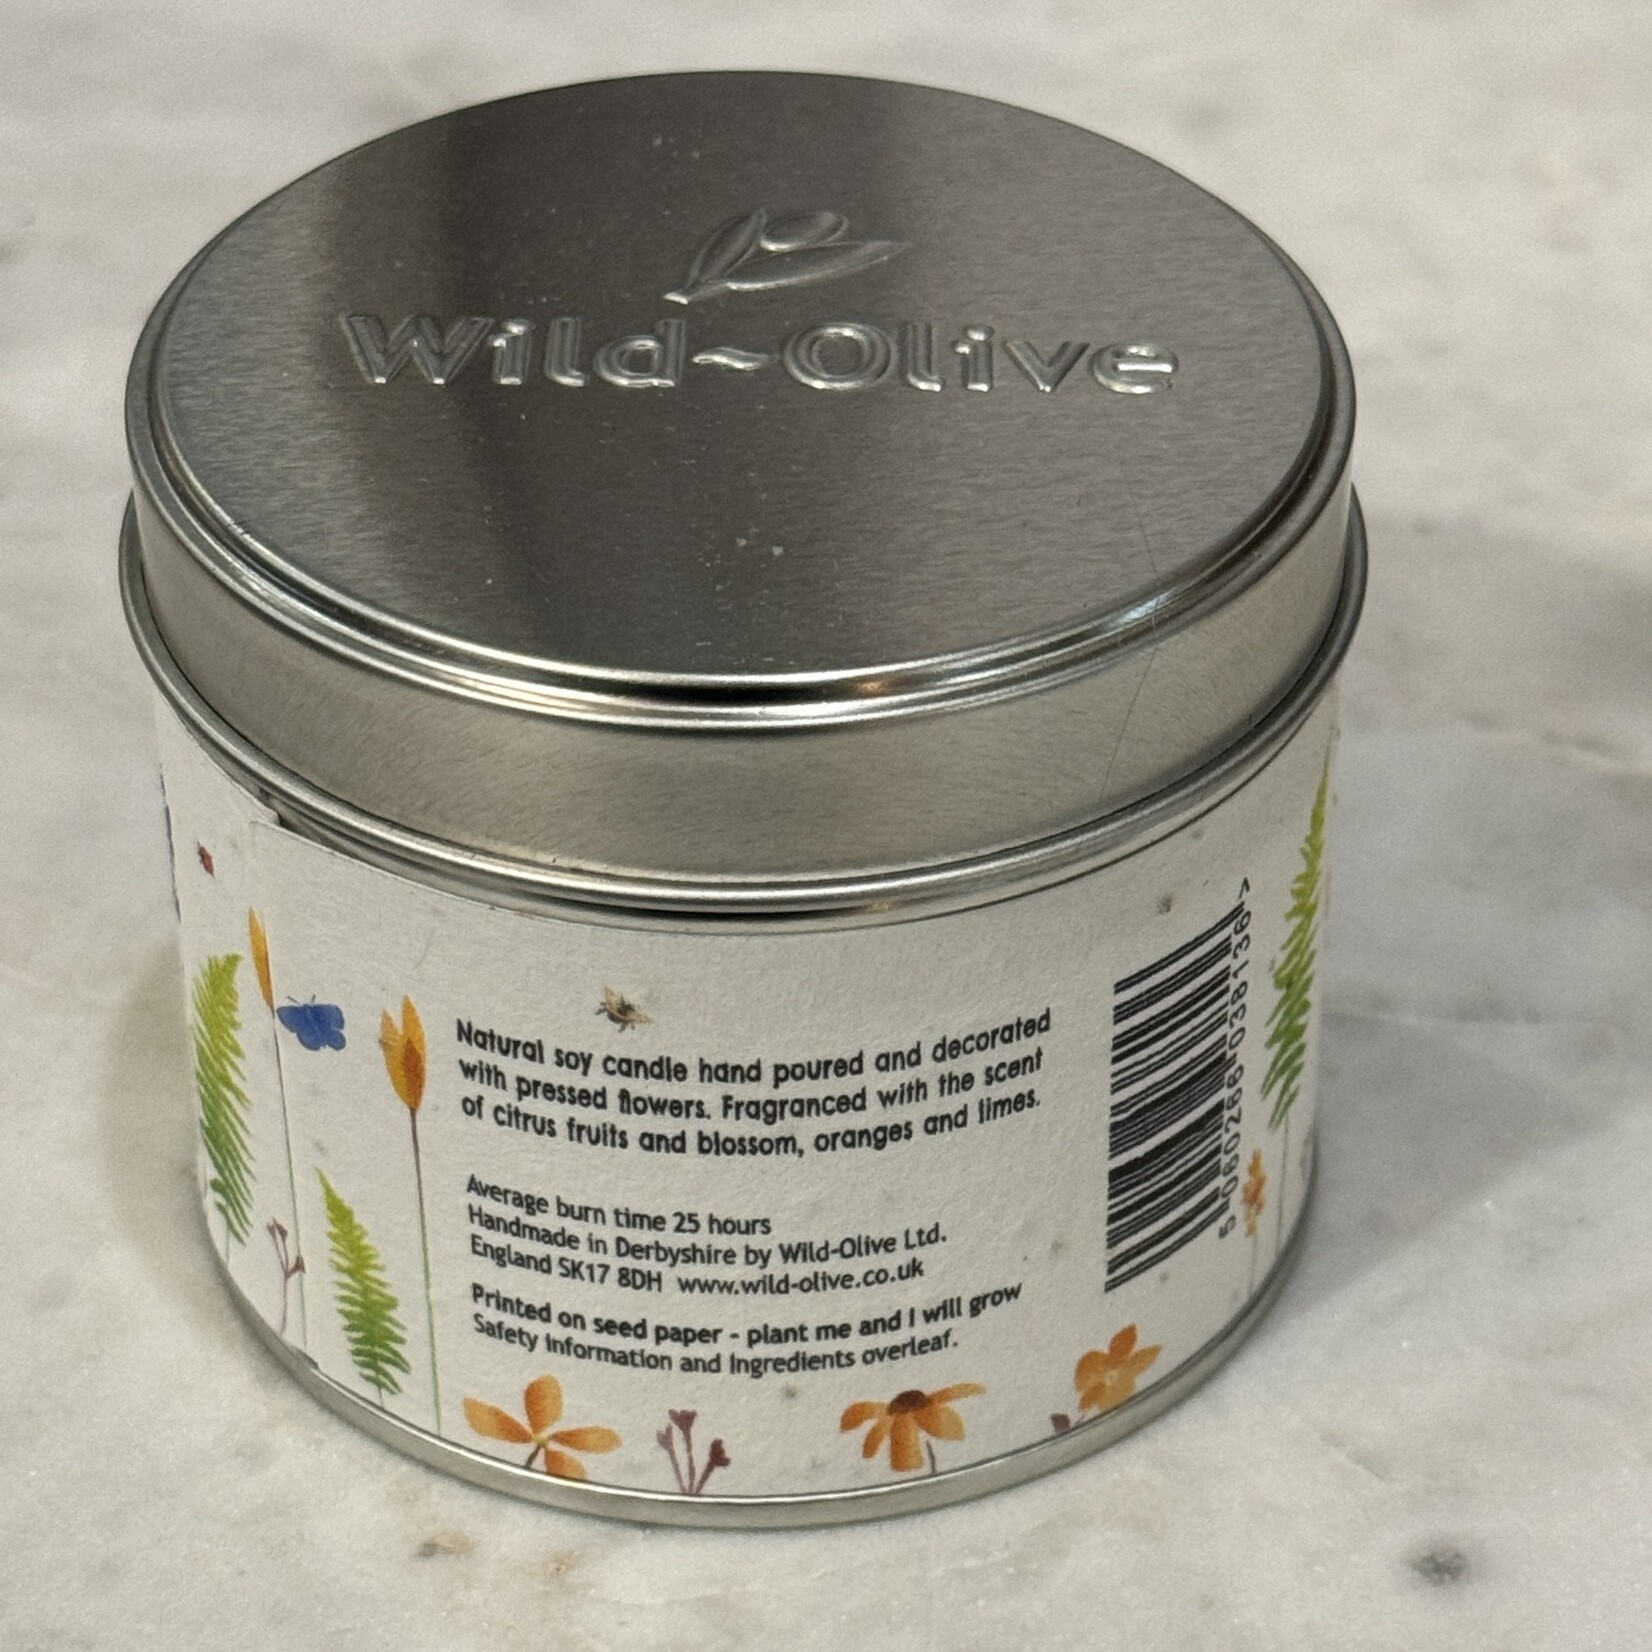 Wild Olive Wild Olive The Orangery Artisanal Tin Candle